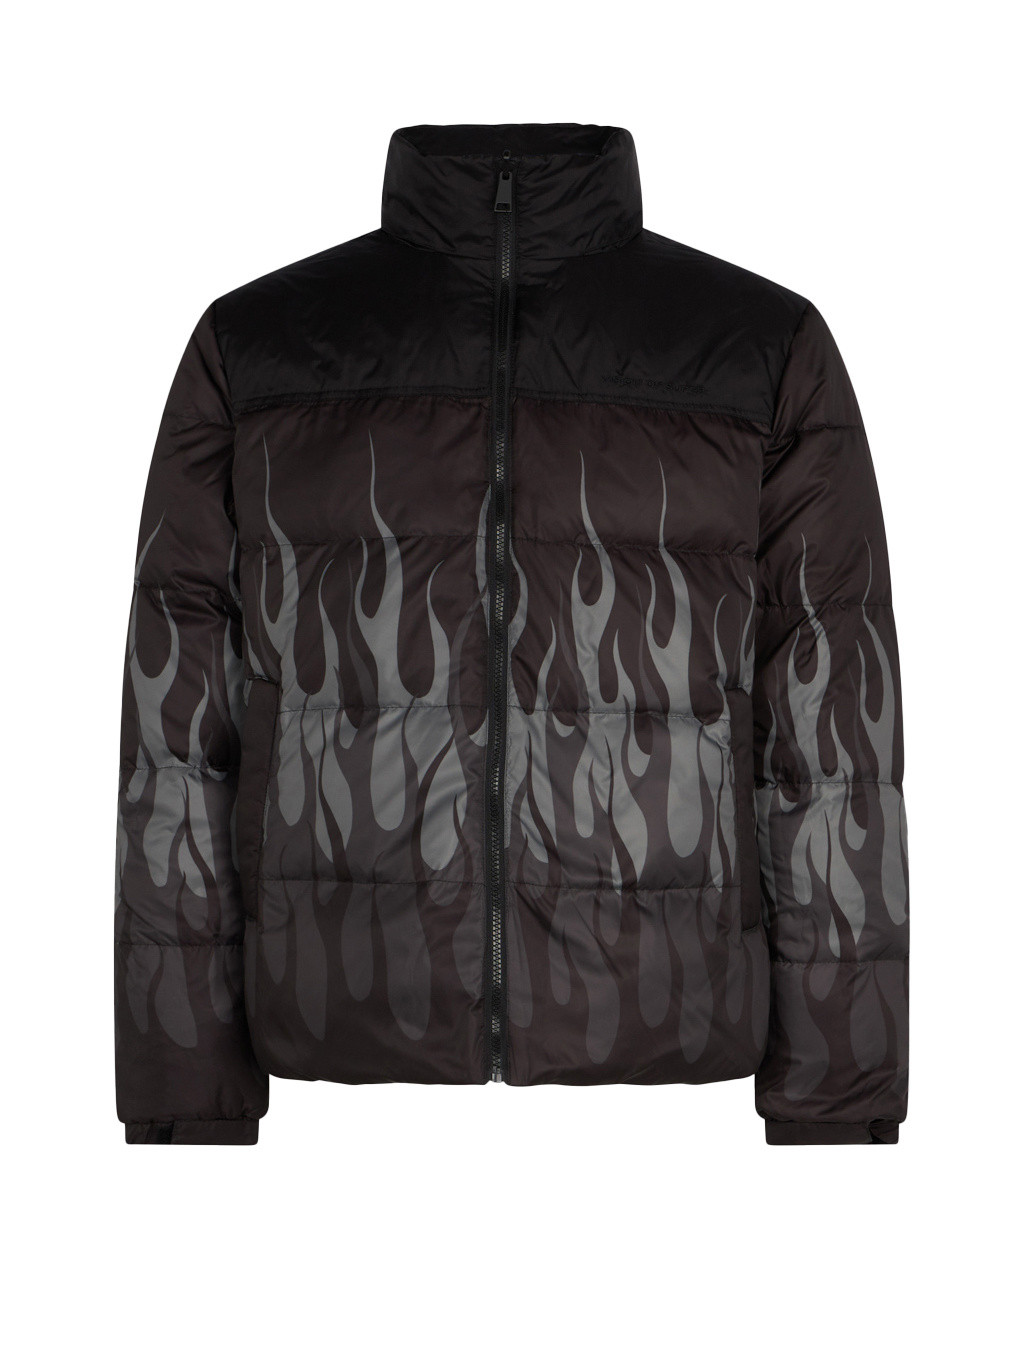 Vision of Super - Triple flame puffer jacket, Black, large image number 0